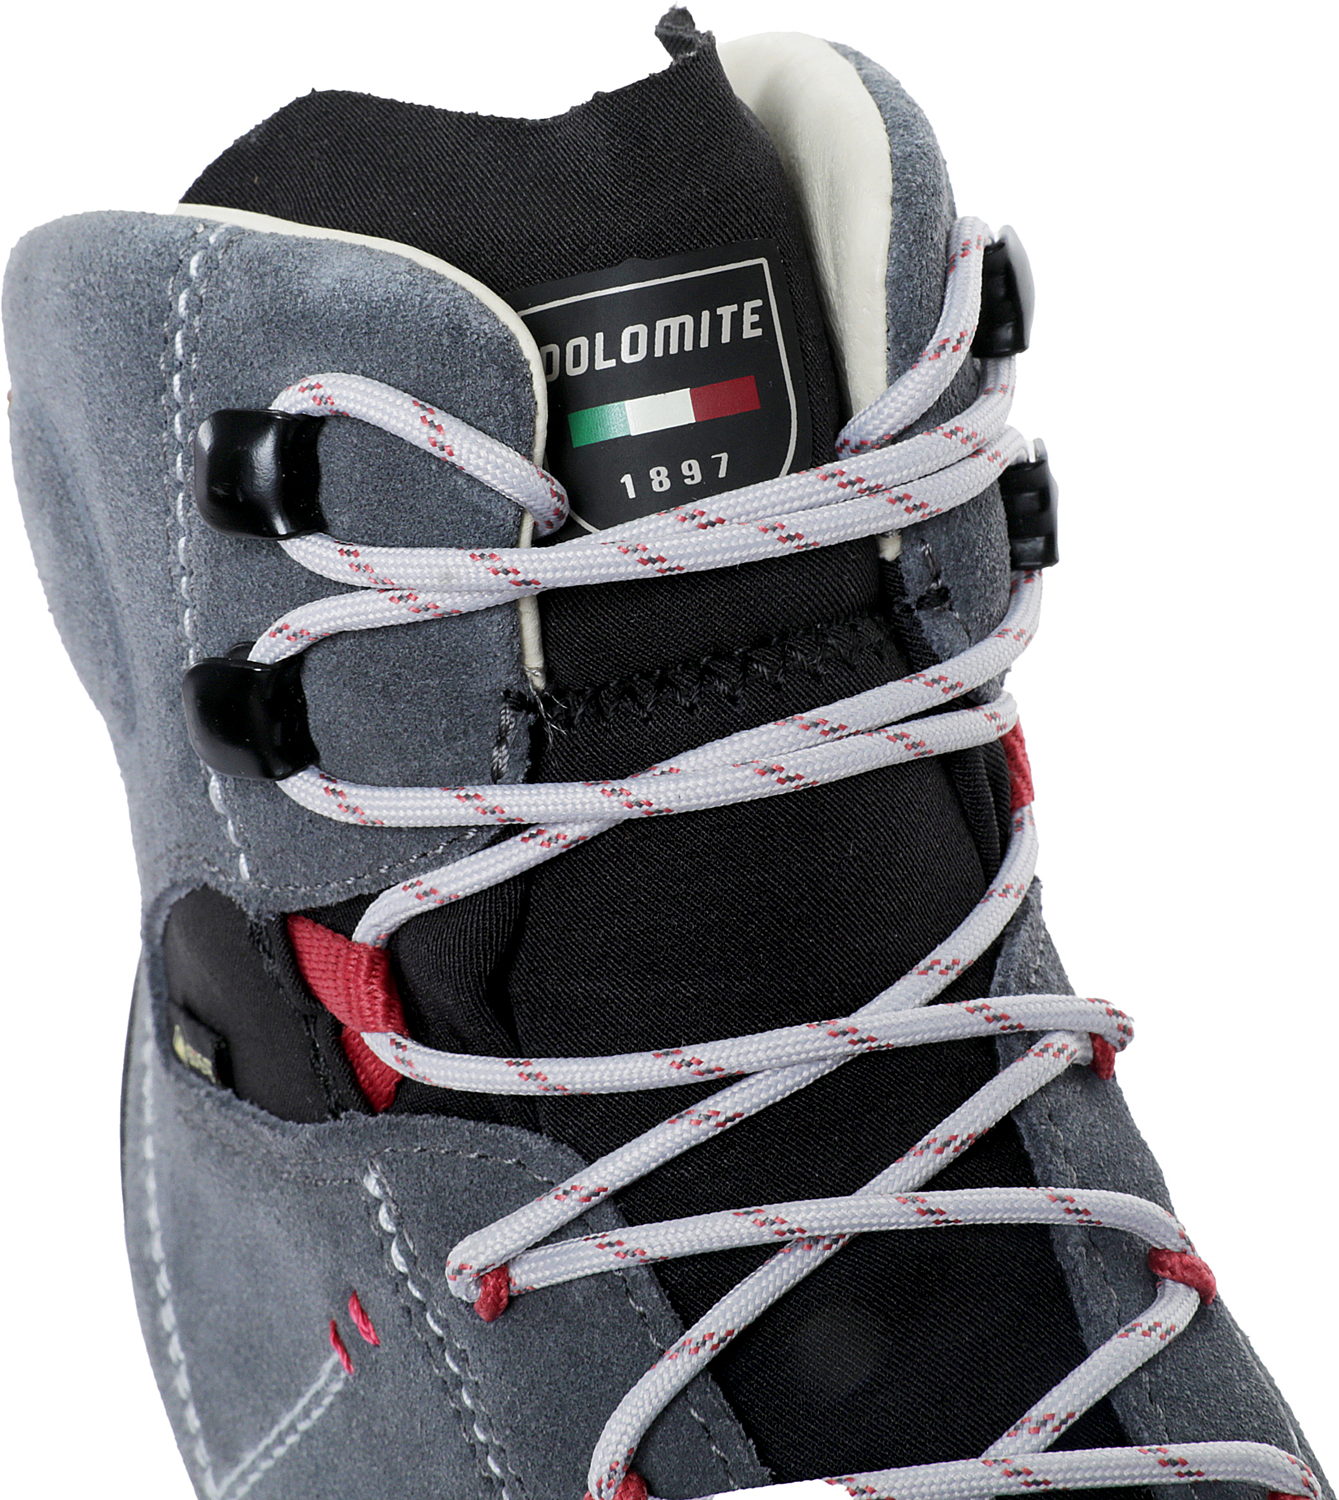 Ботинки Dolomite 54 Hike Evo Gtx W's Gunmetal Grey